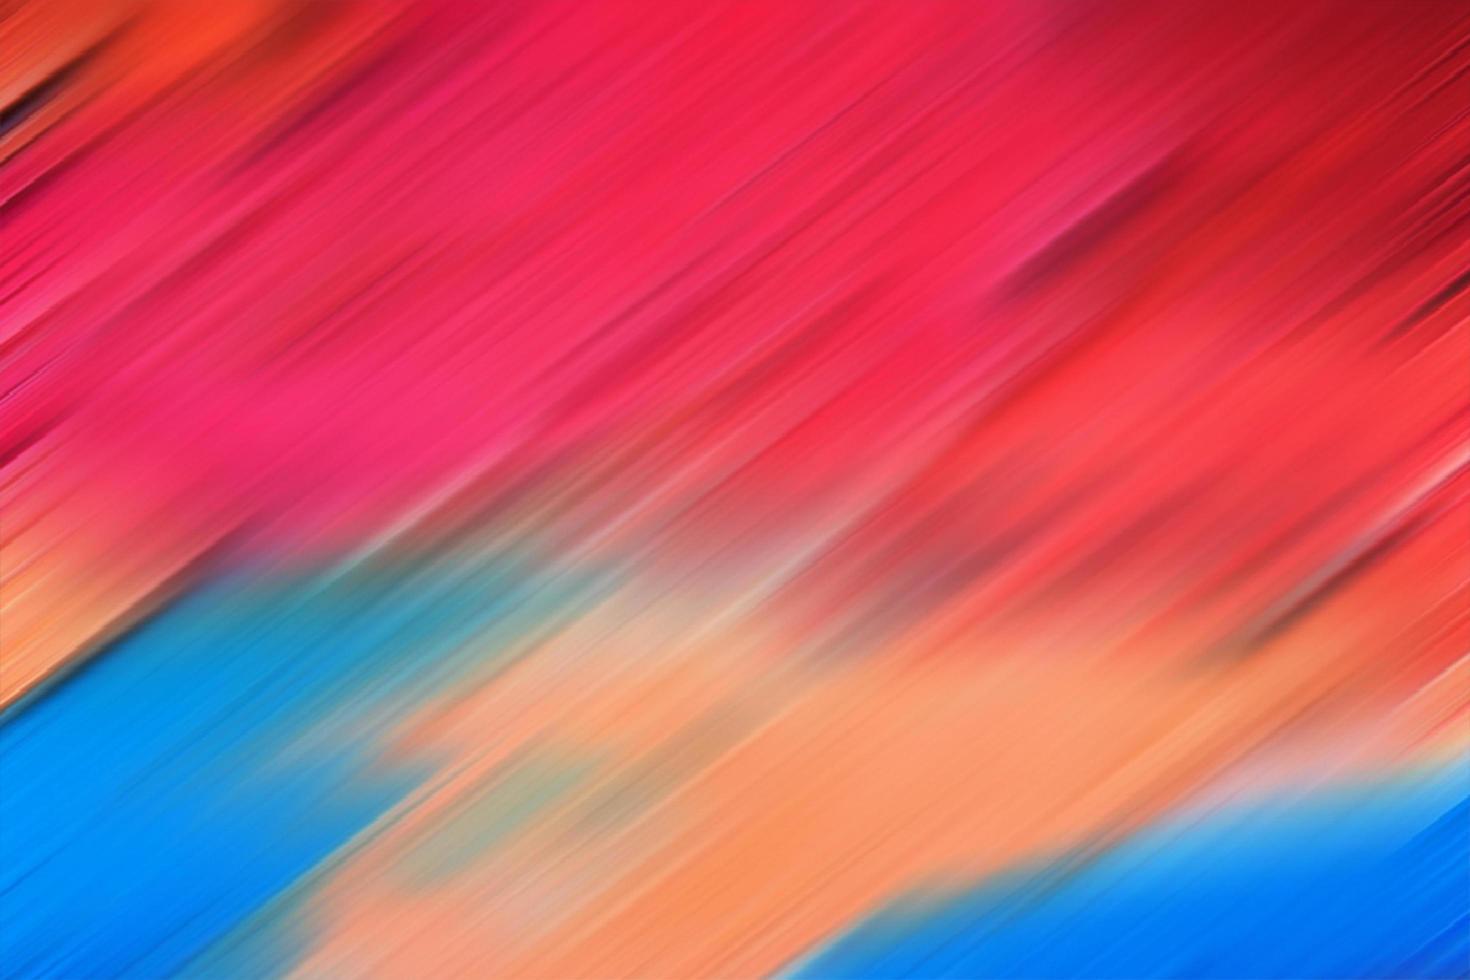 Hãy chiêm ngưỡng bức ảnh nền máy tính sặc sỡ với màu sắc rực rỡ sẽ khiến bạn thấy đầy phấn khích và năng động.